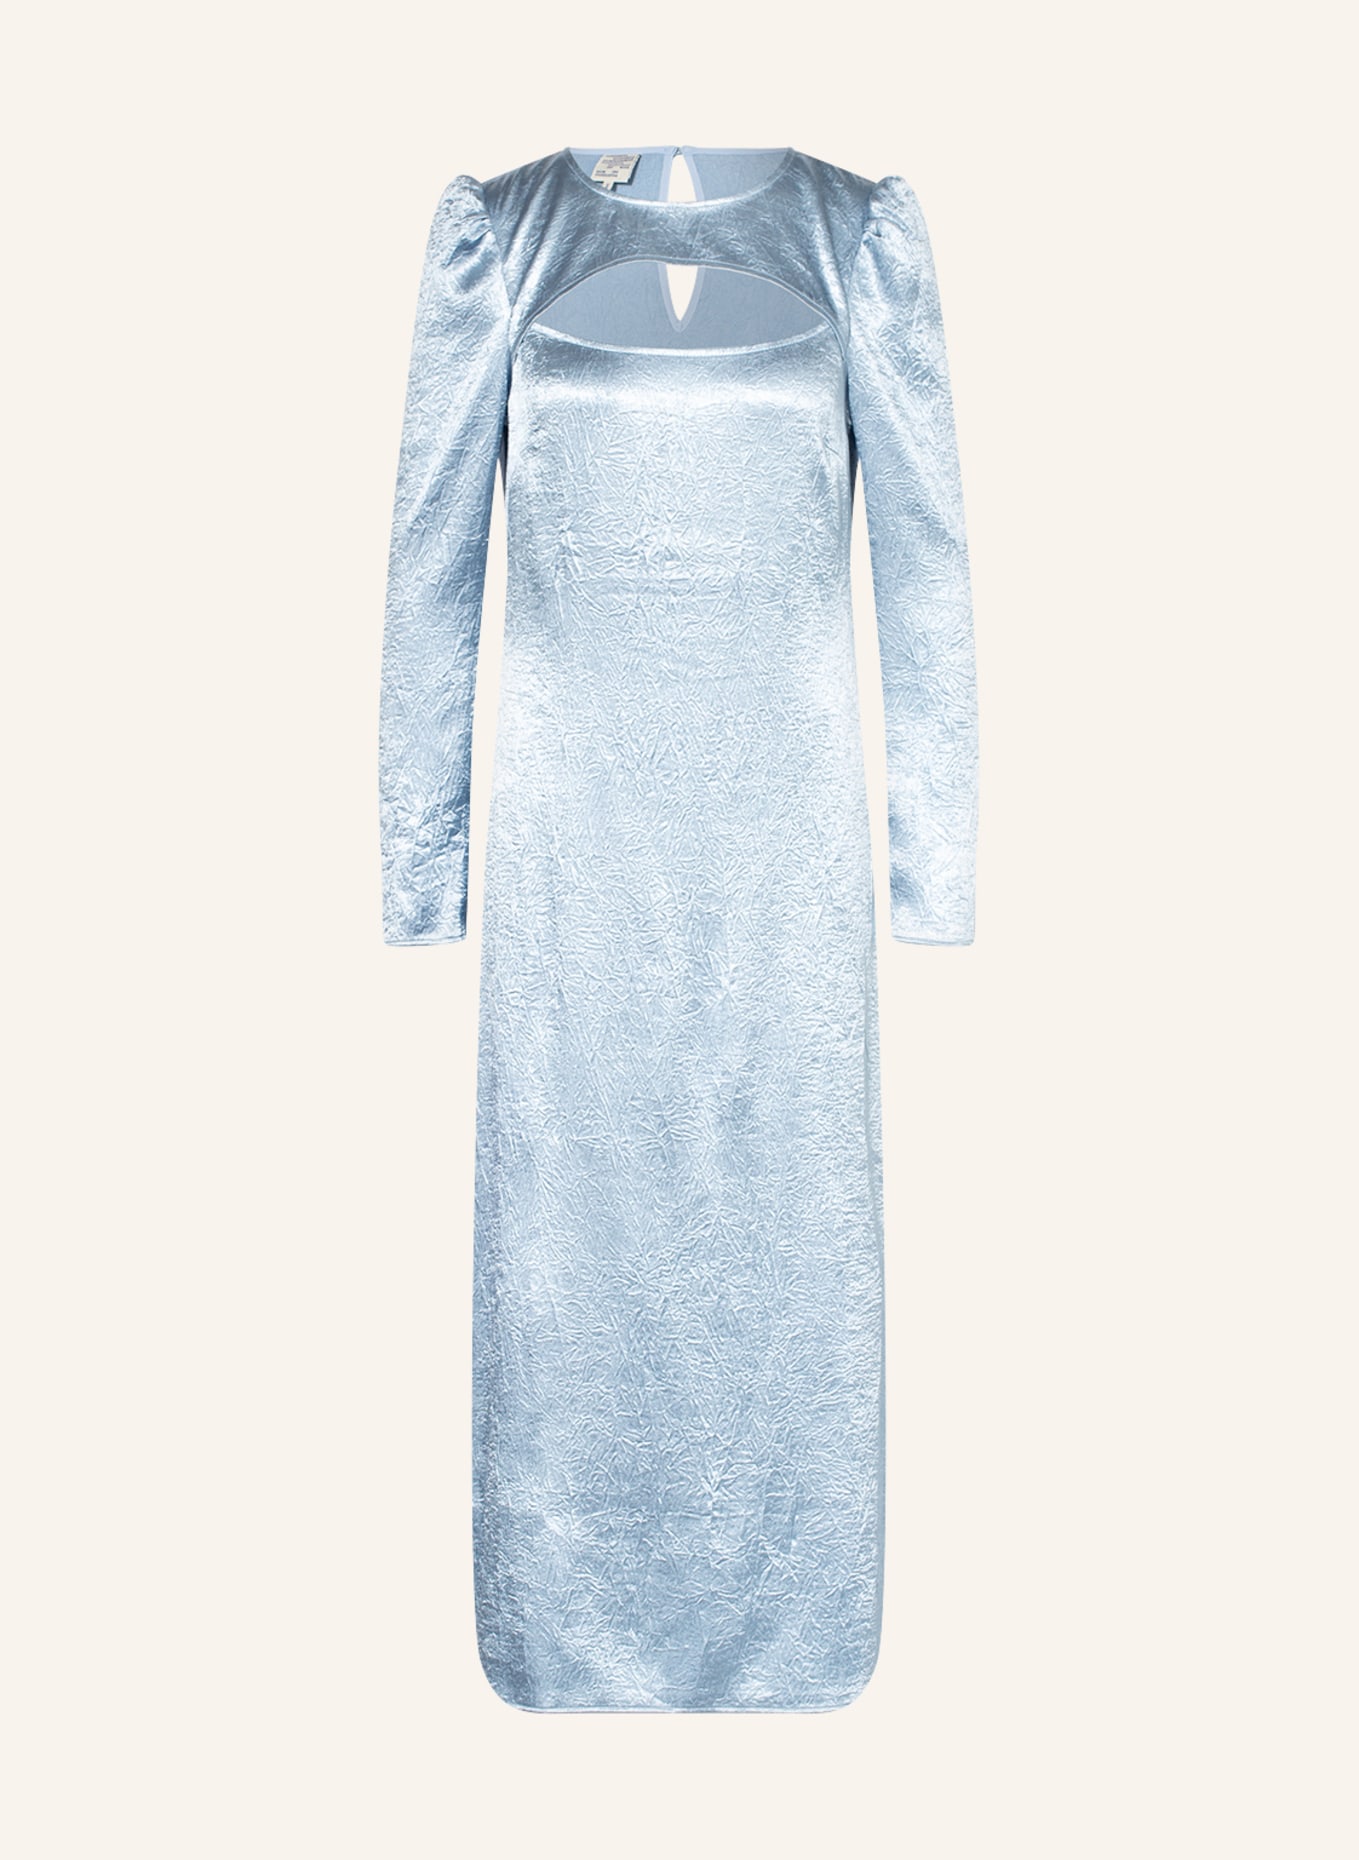 BAUM UND PFERDGARTEN Kleid ANETO mit Cut-out, Farbe: HELLBLAU (Bild 1)